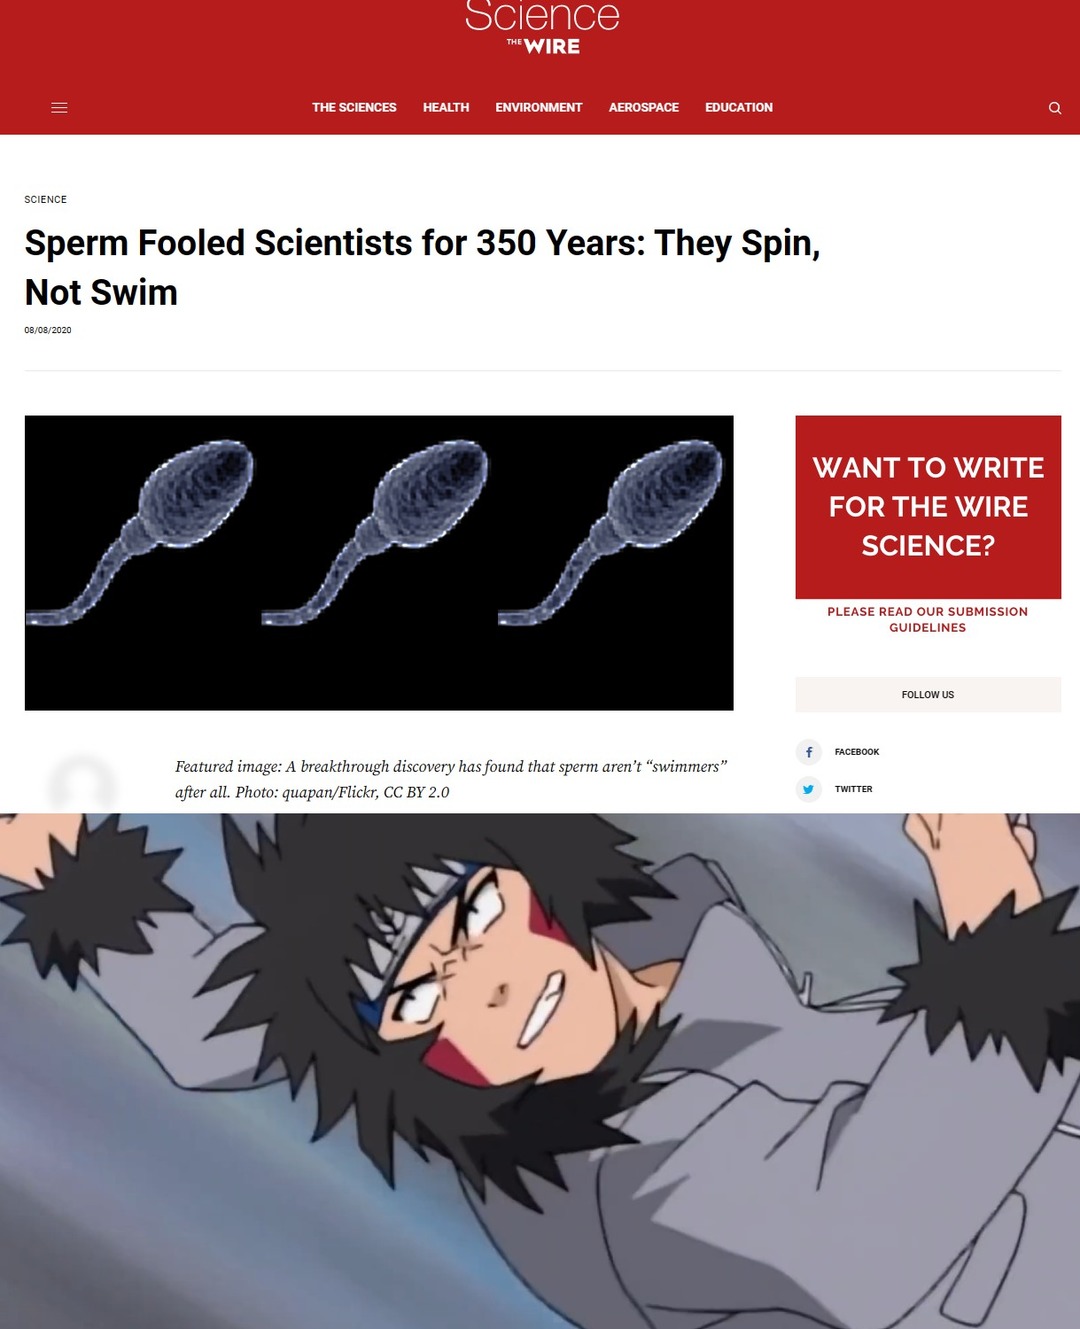 Dongs in a sperm - meme